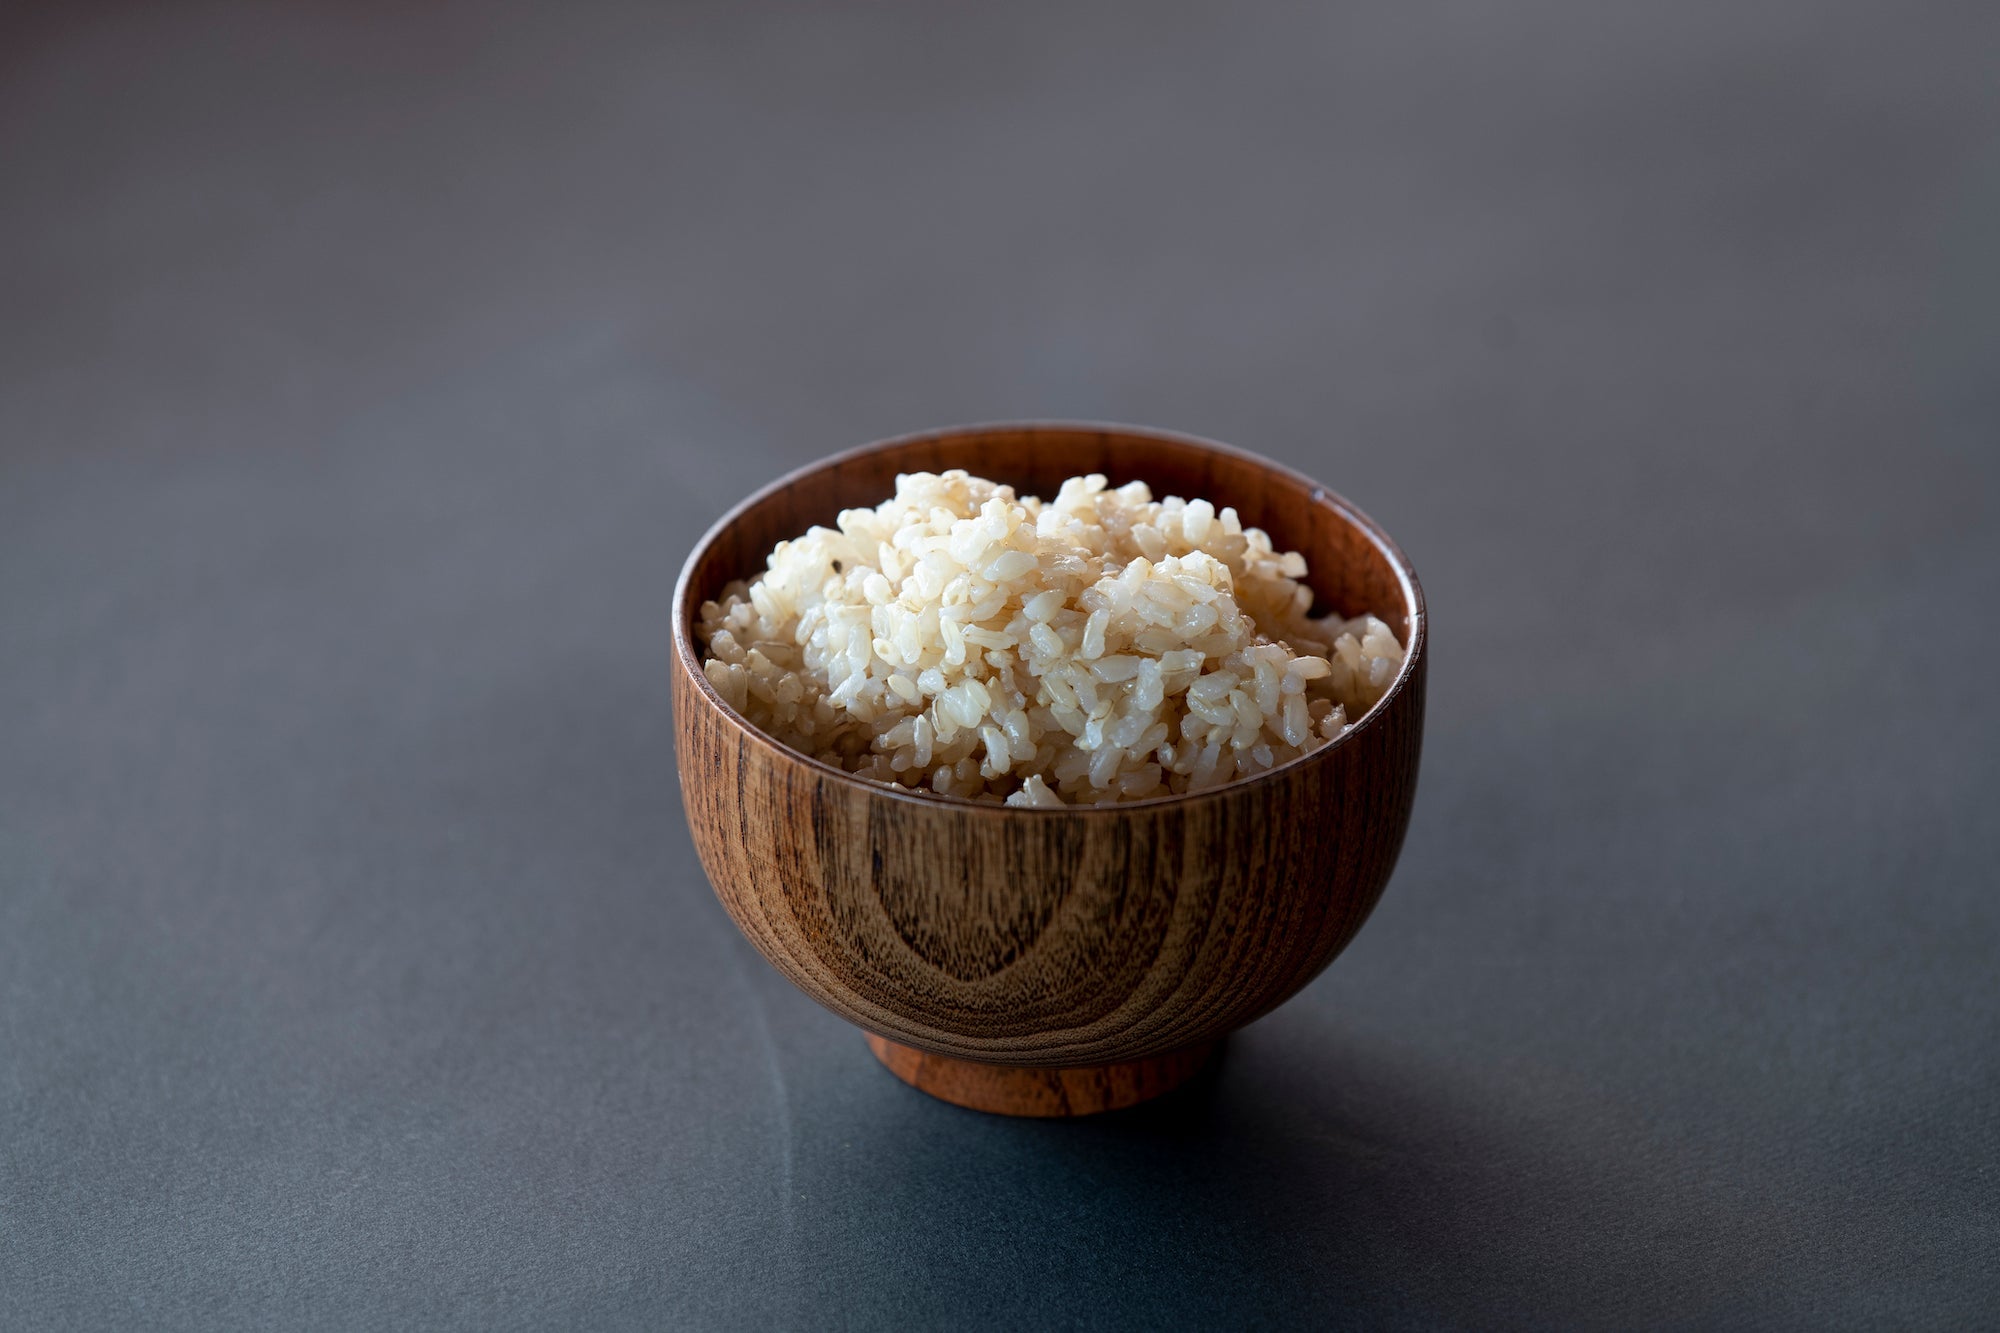 【毎月お届け】愛菜連の無農薬玄米 定期購入5kgコース